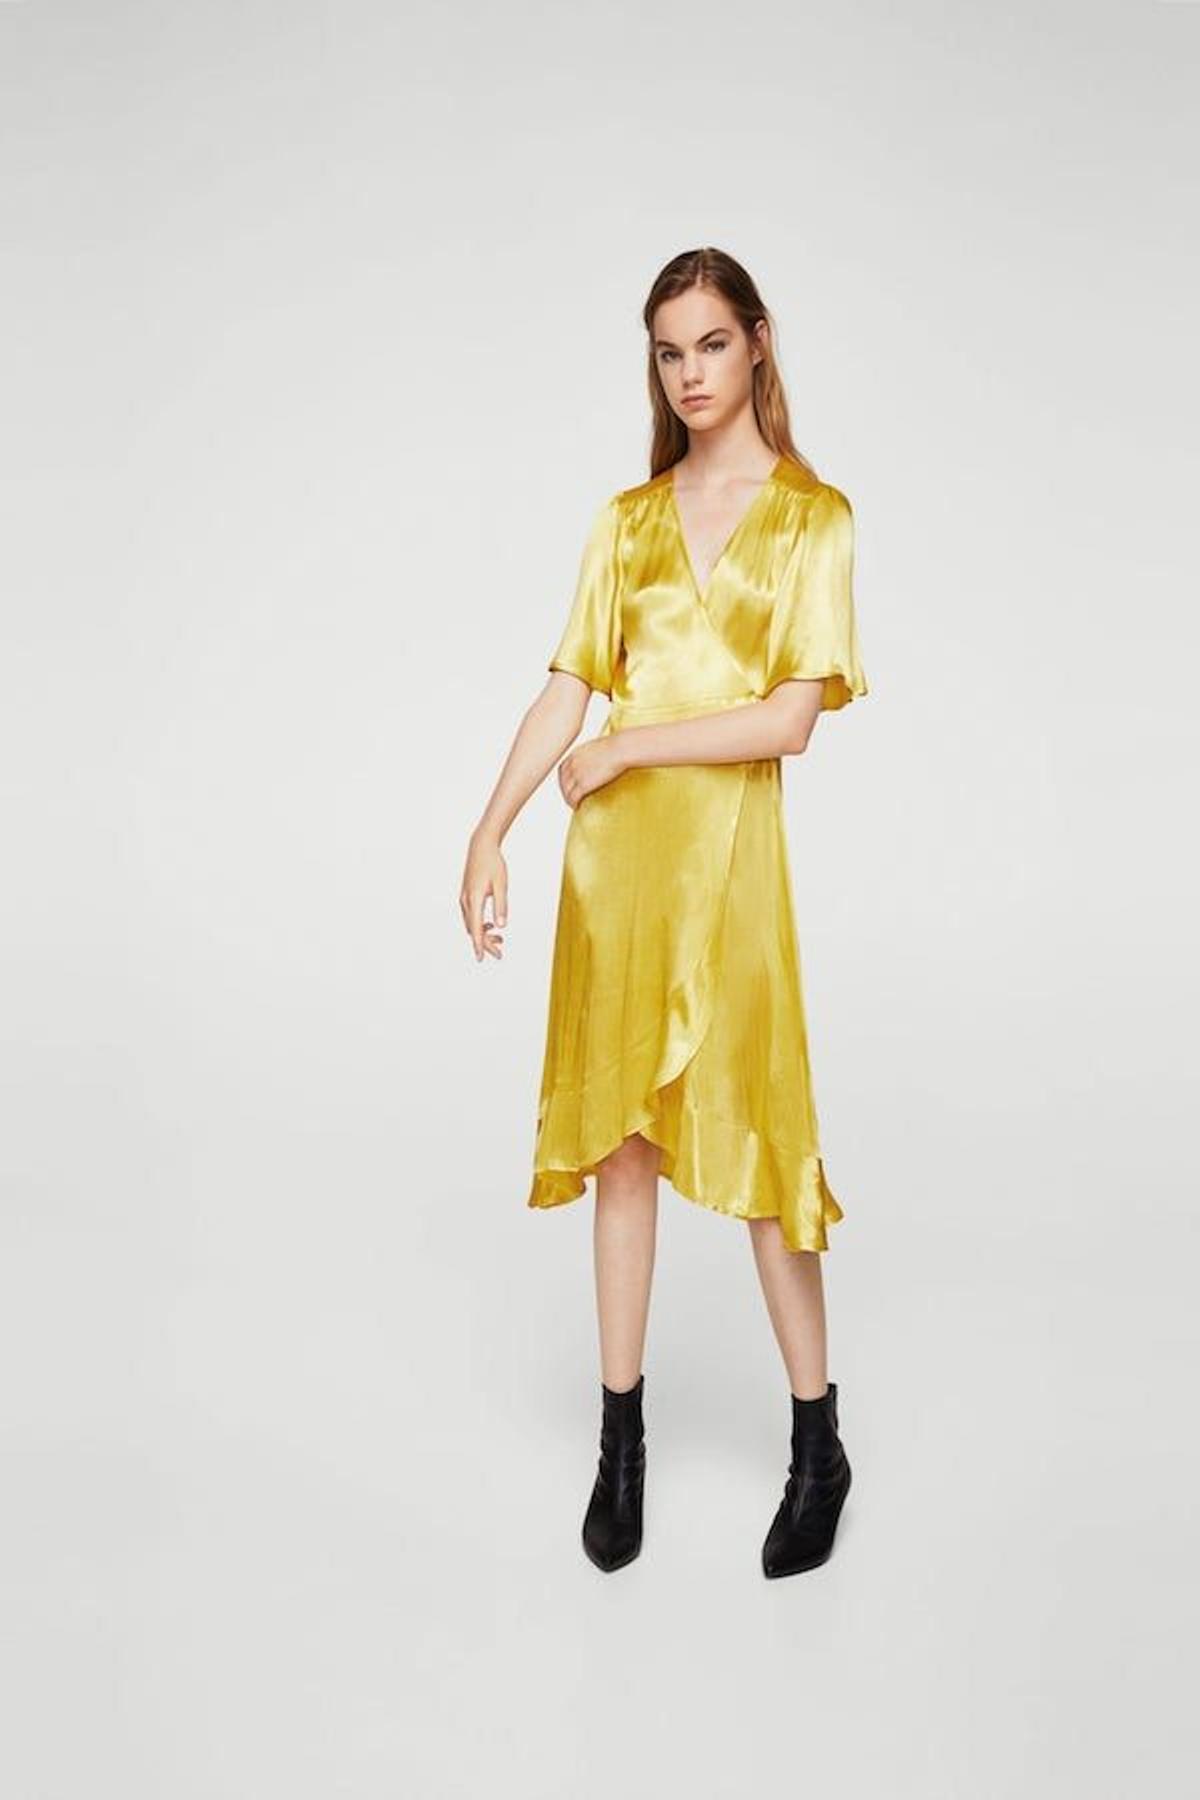 'Wish list' de septiembre: el vestido lencero solar